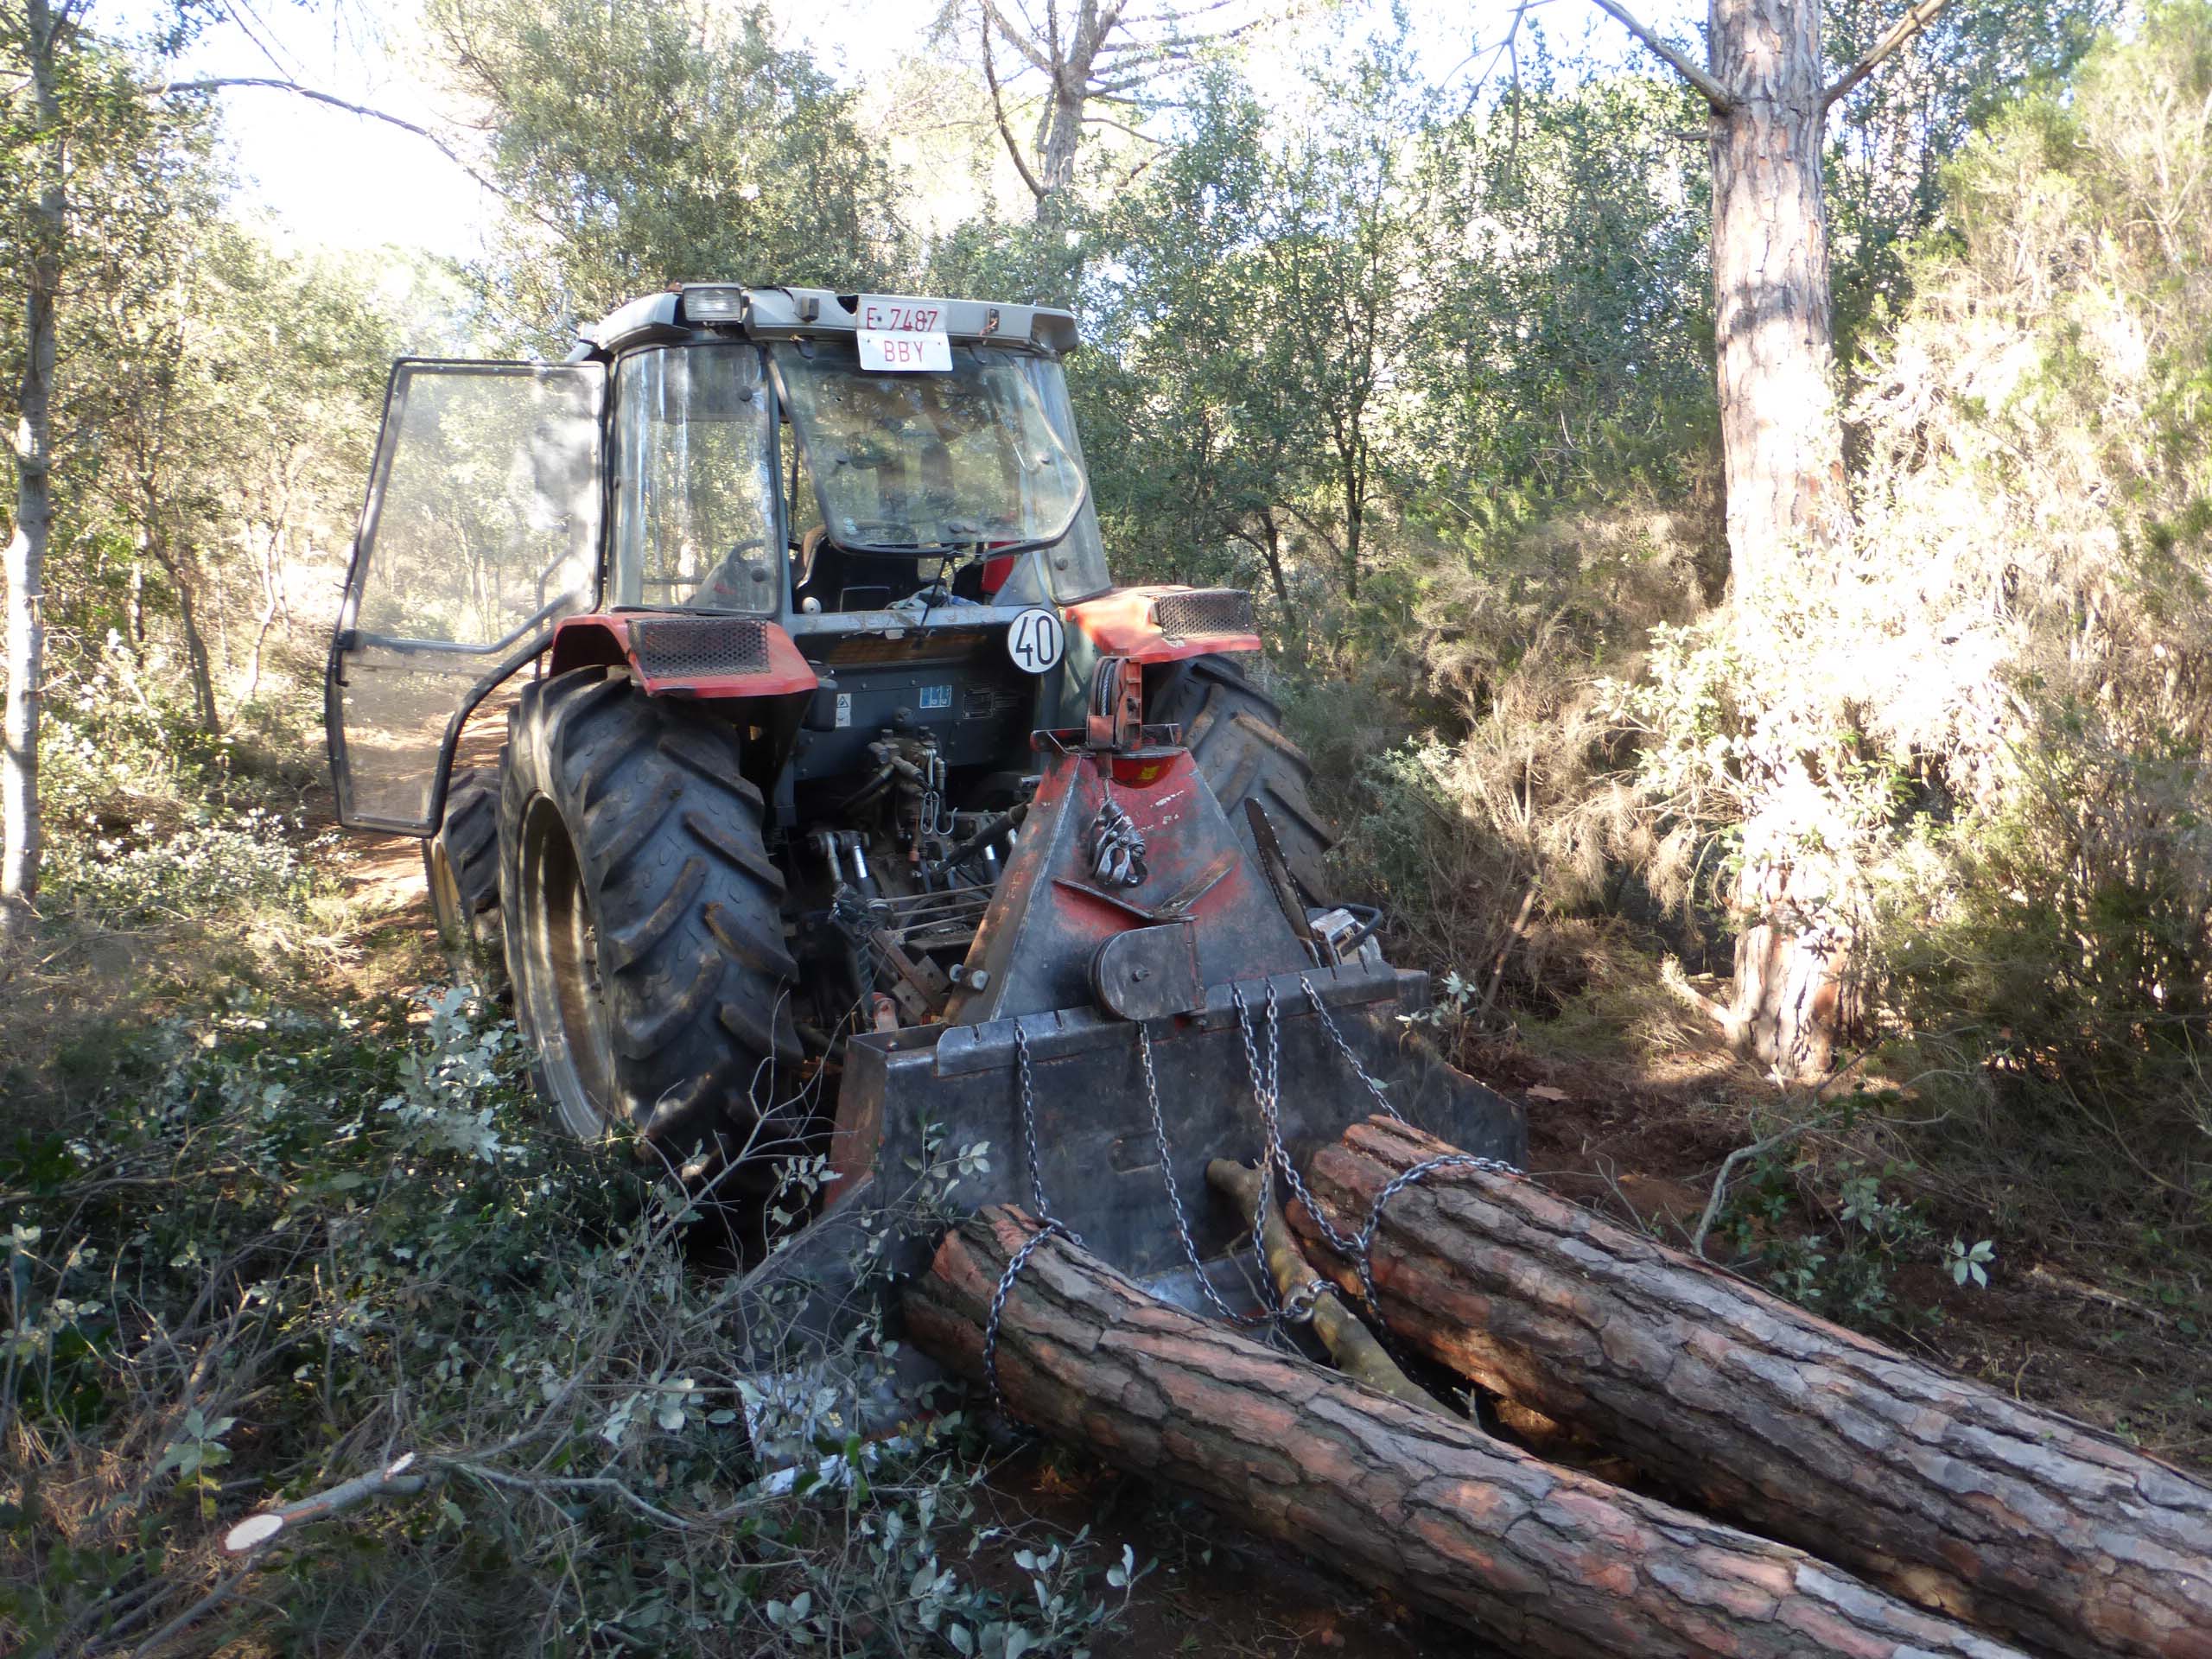 Treballs de tallada i desembosc de fusta de pi pinyer per afavorir la regeneració natural de quercínies. Desembre 2015